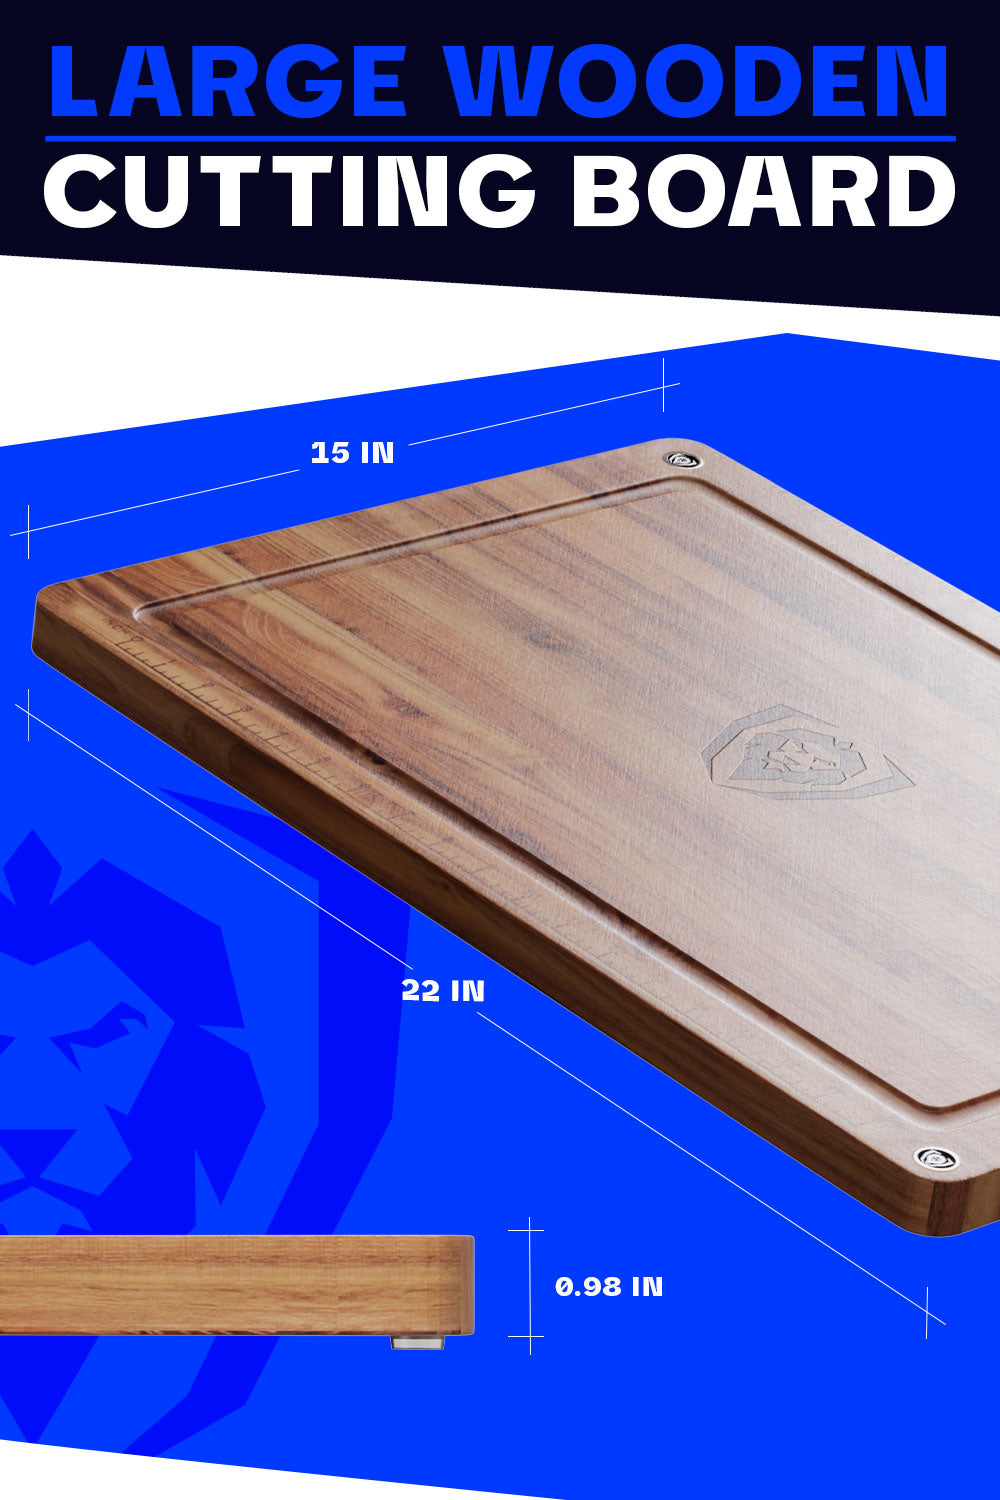 Dalstrong horizontal grain teak cutting board showcasing it's size.